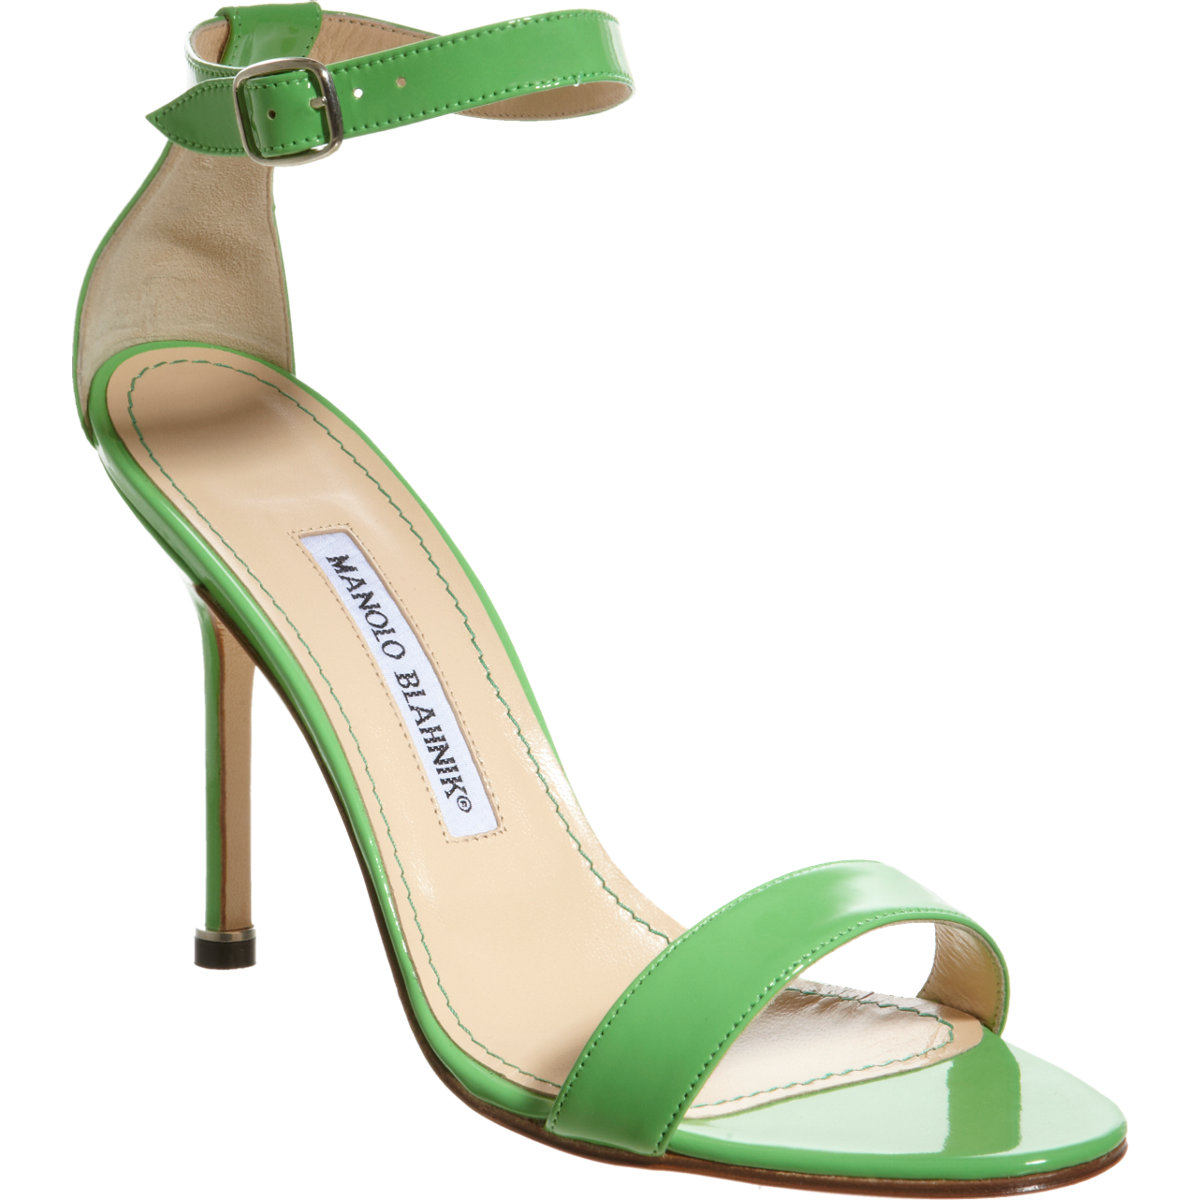 Manolo Blahnik Chaos High Heel Sandals in Green (mint) | Lyst